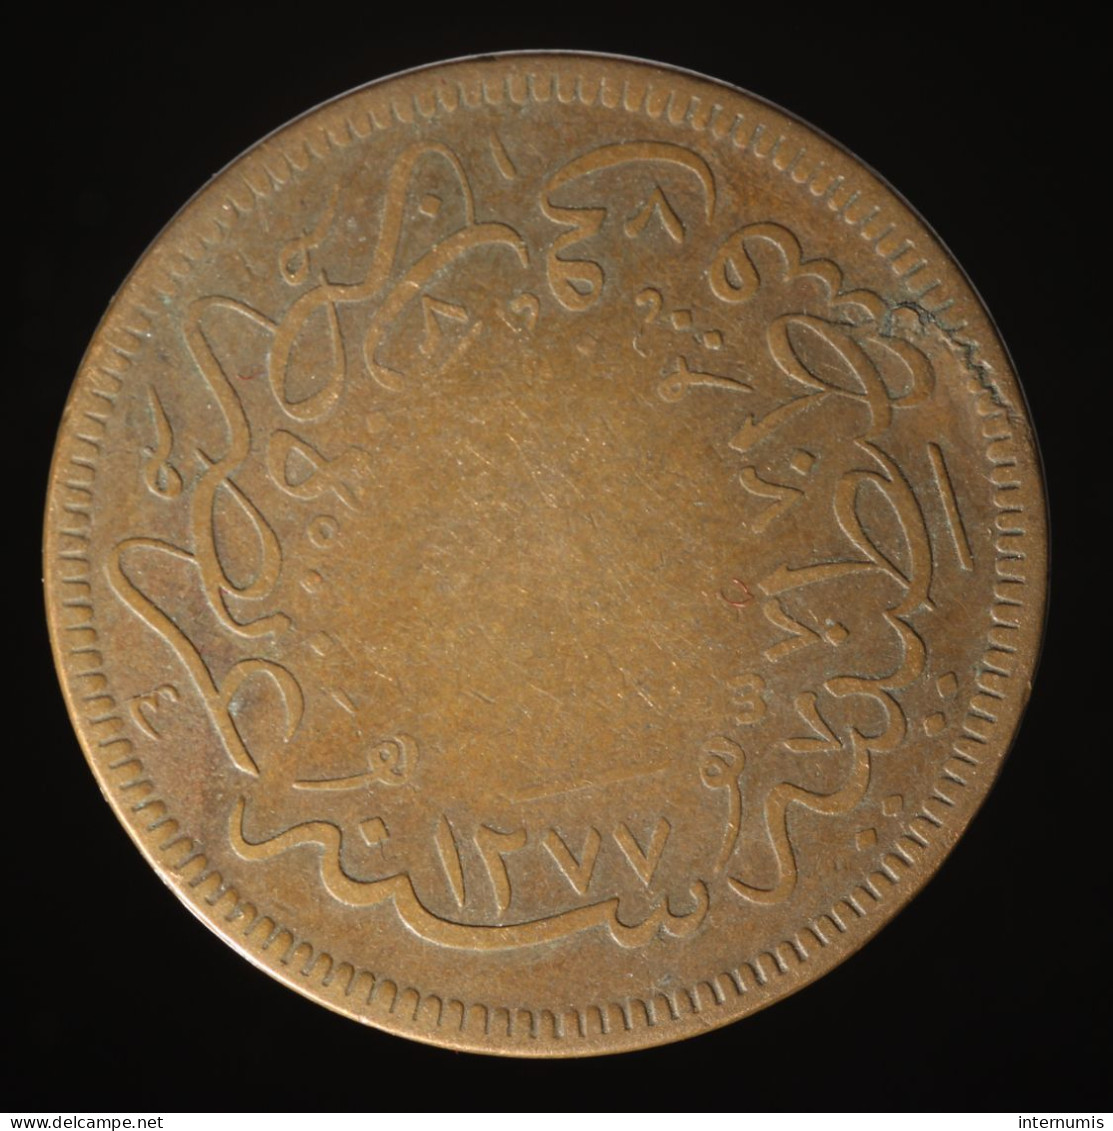  Turquie / Turkey, Abdulaziz, 40 Para, AH 1277//4 (1864), , Cuivre (Copper), TB+ (VF),
KM#702 - Aegypten